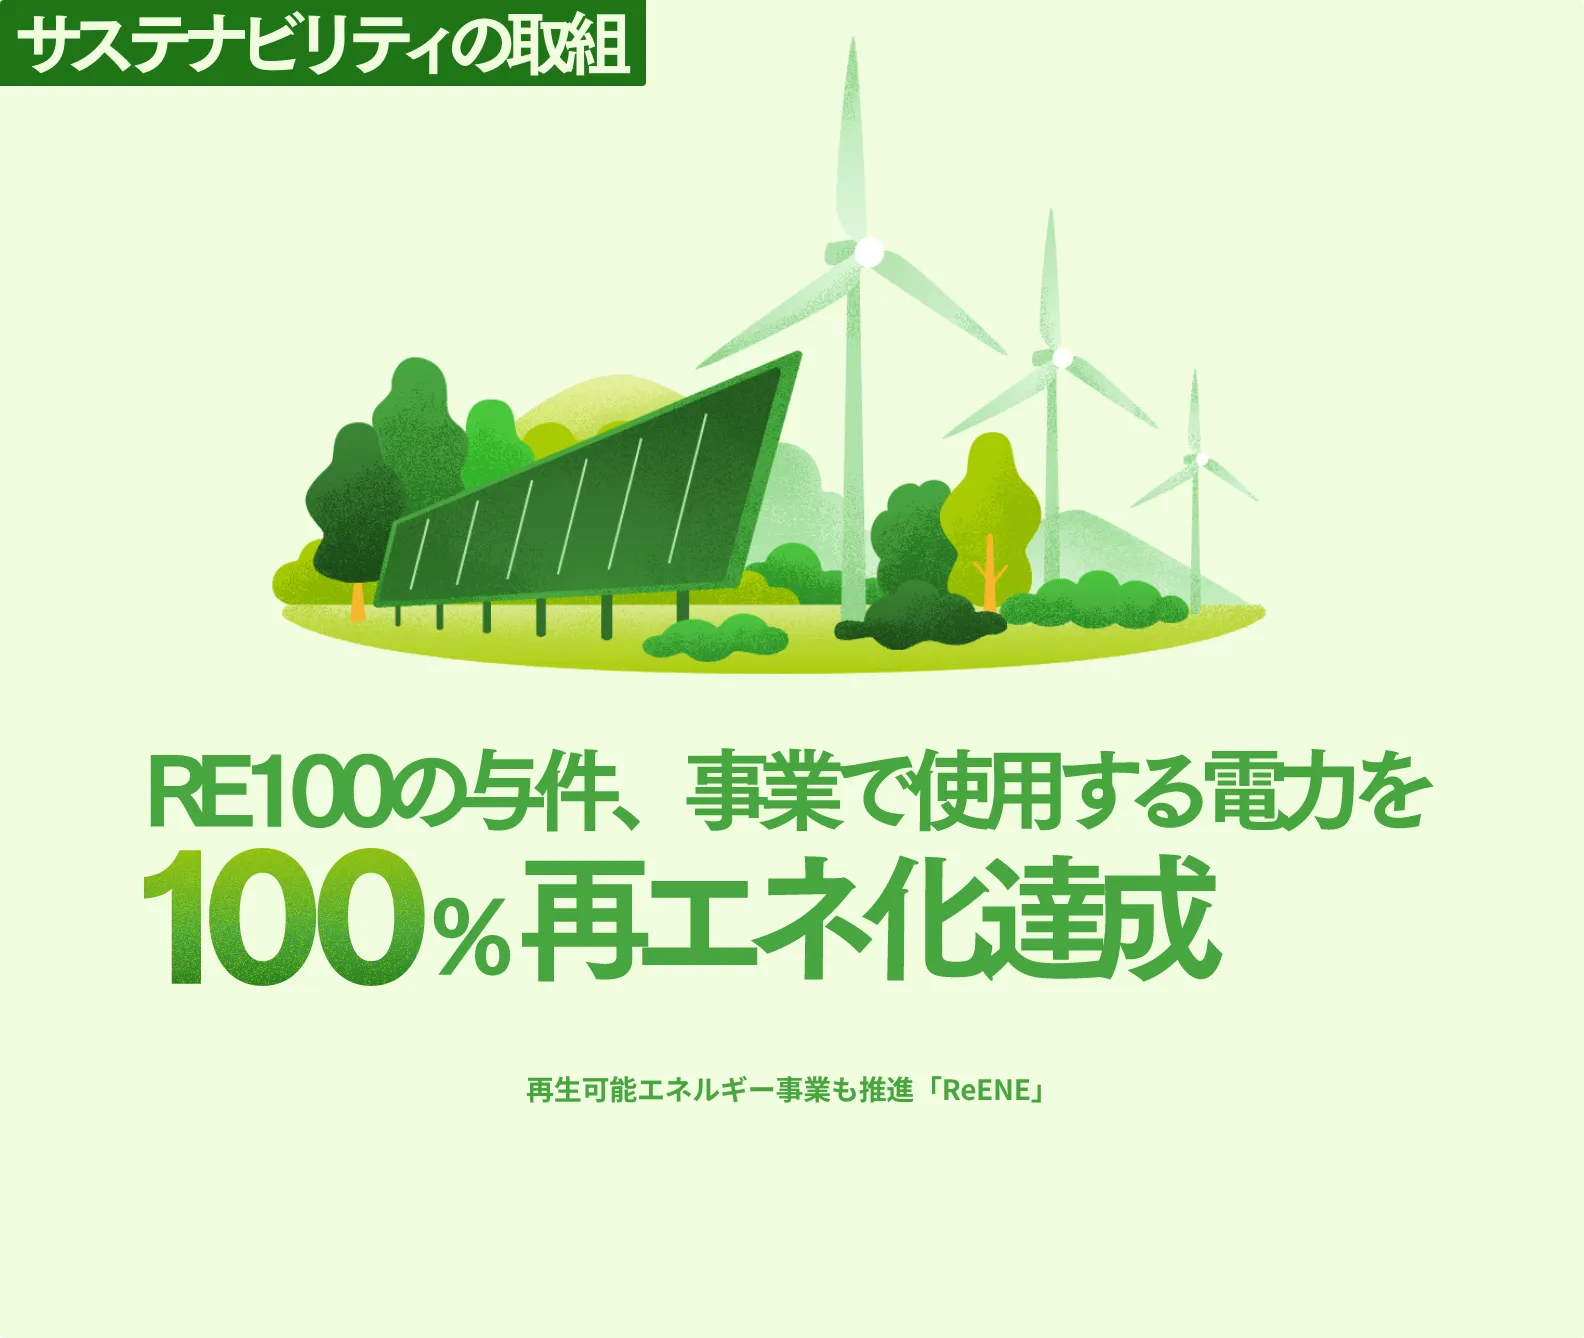 サステナビリティの取組 RE100の与件、事業で使用する電力を100％再エネ化達成 再生可能エネルギー事業も推進「ReENE」